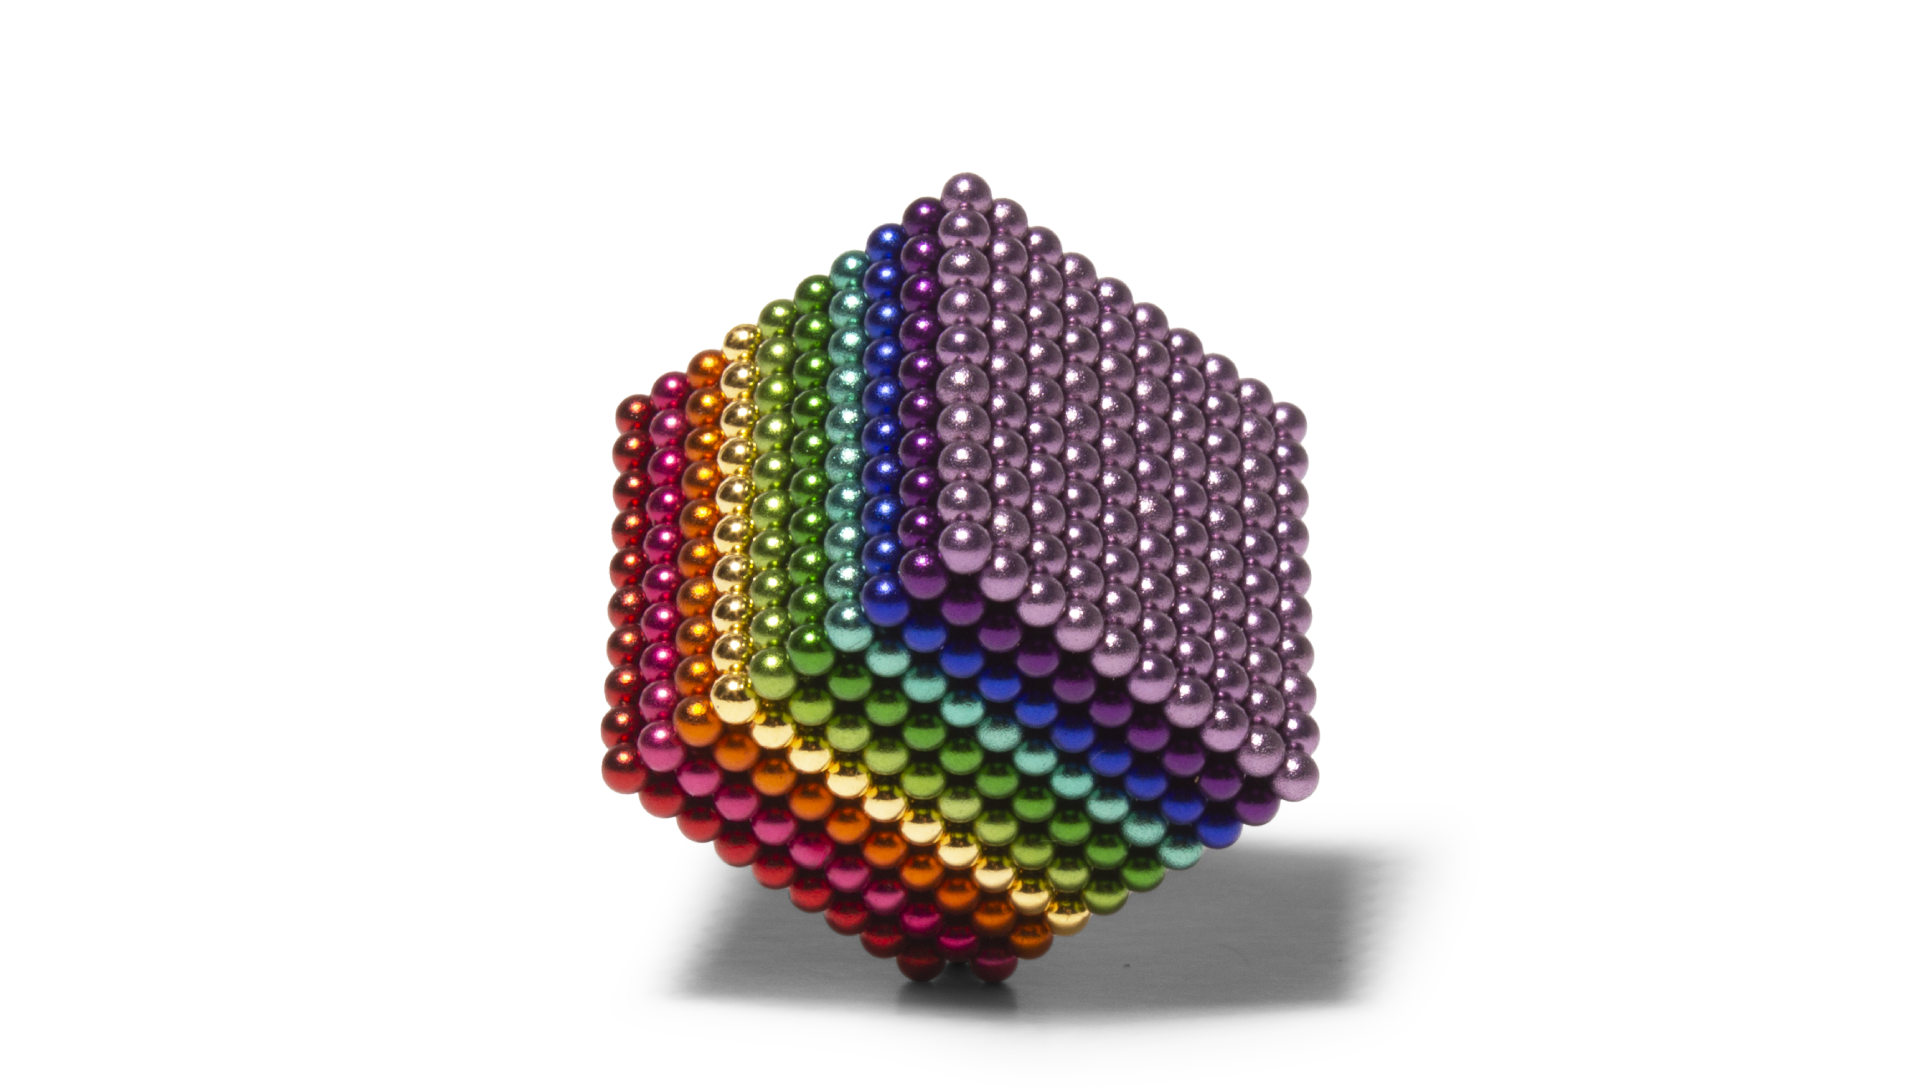 The 1000 Rainbow Cube